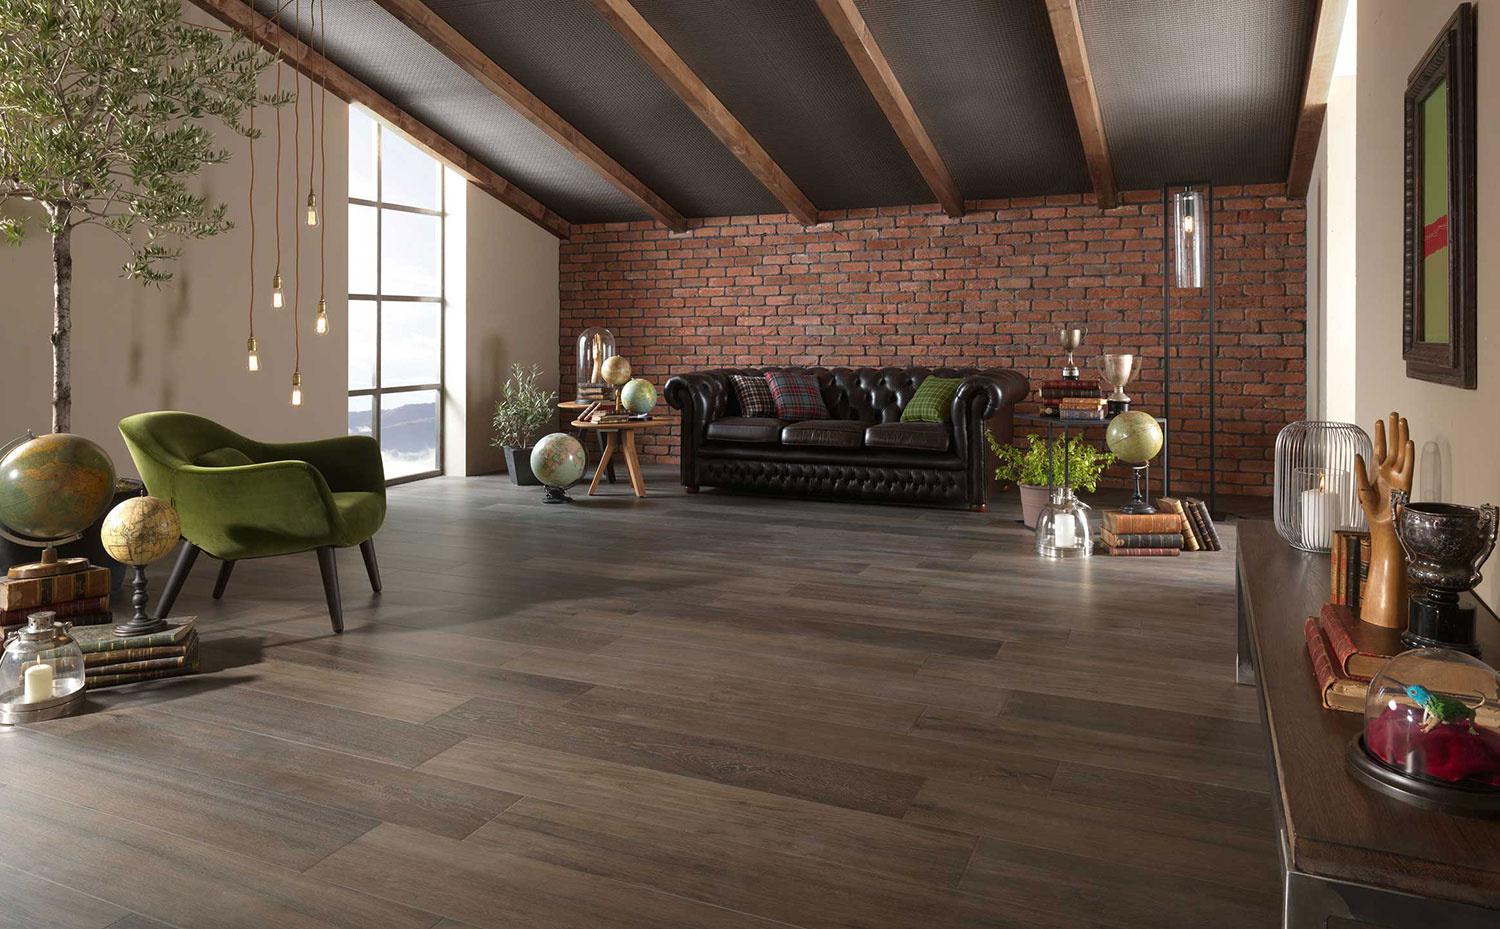 wooden tiles in living room